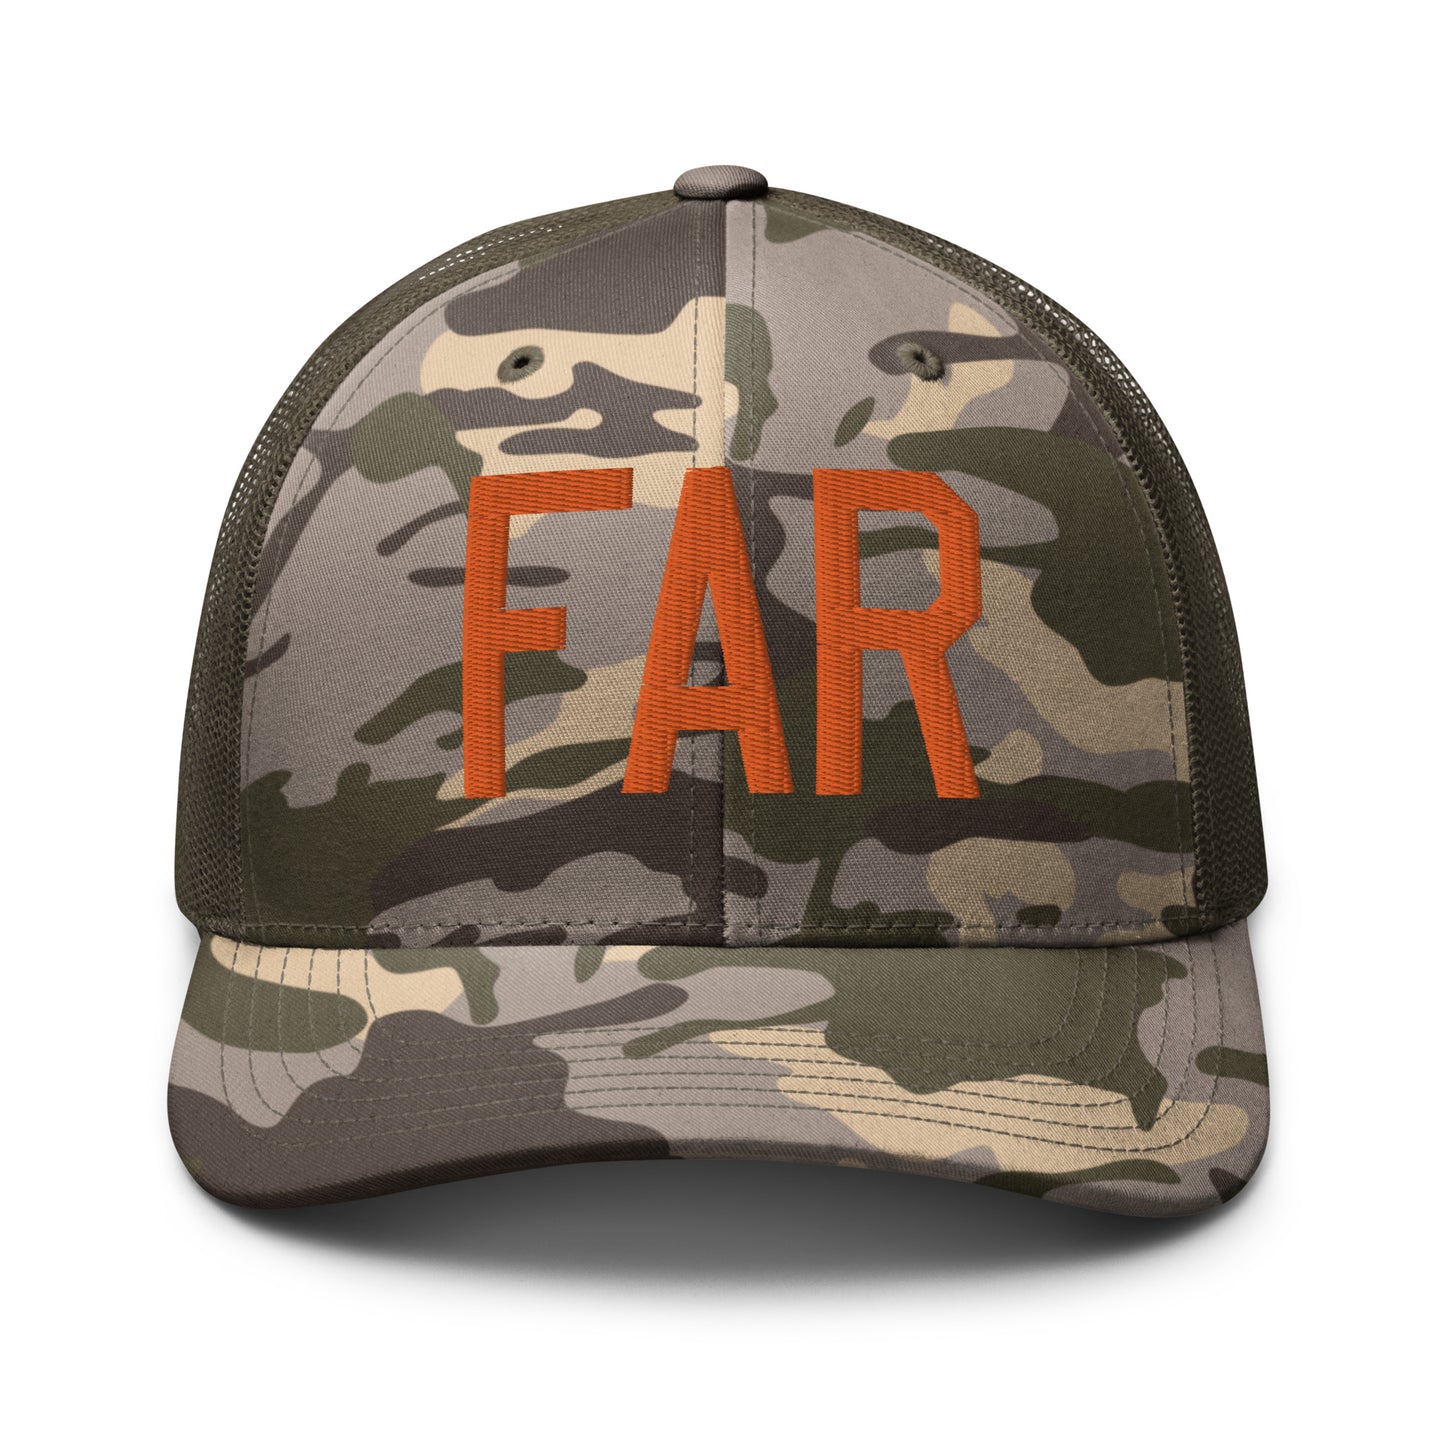 Airport Code Camouflage Trucker Hat - Orange • FAR Fargo • YHM Designs - Image 17